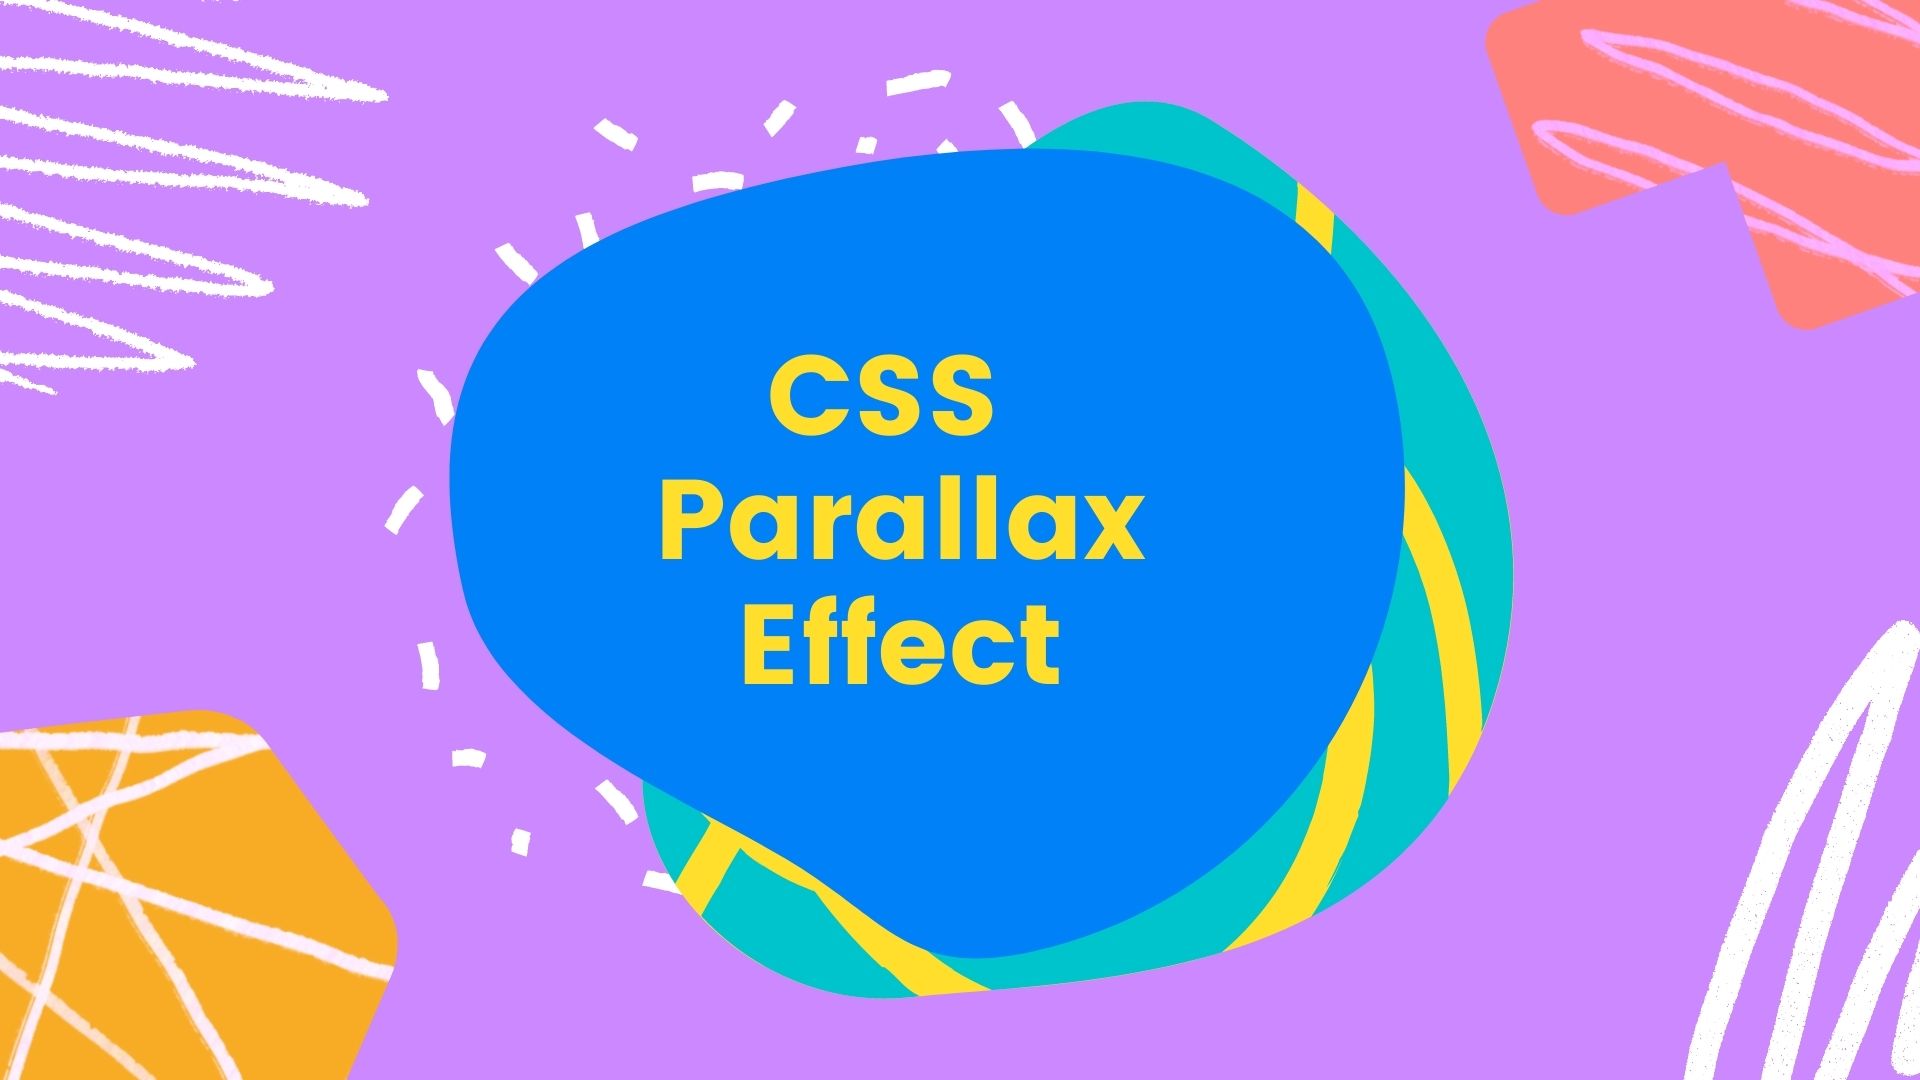 Parallax Effect